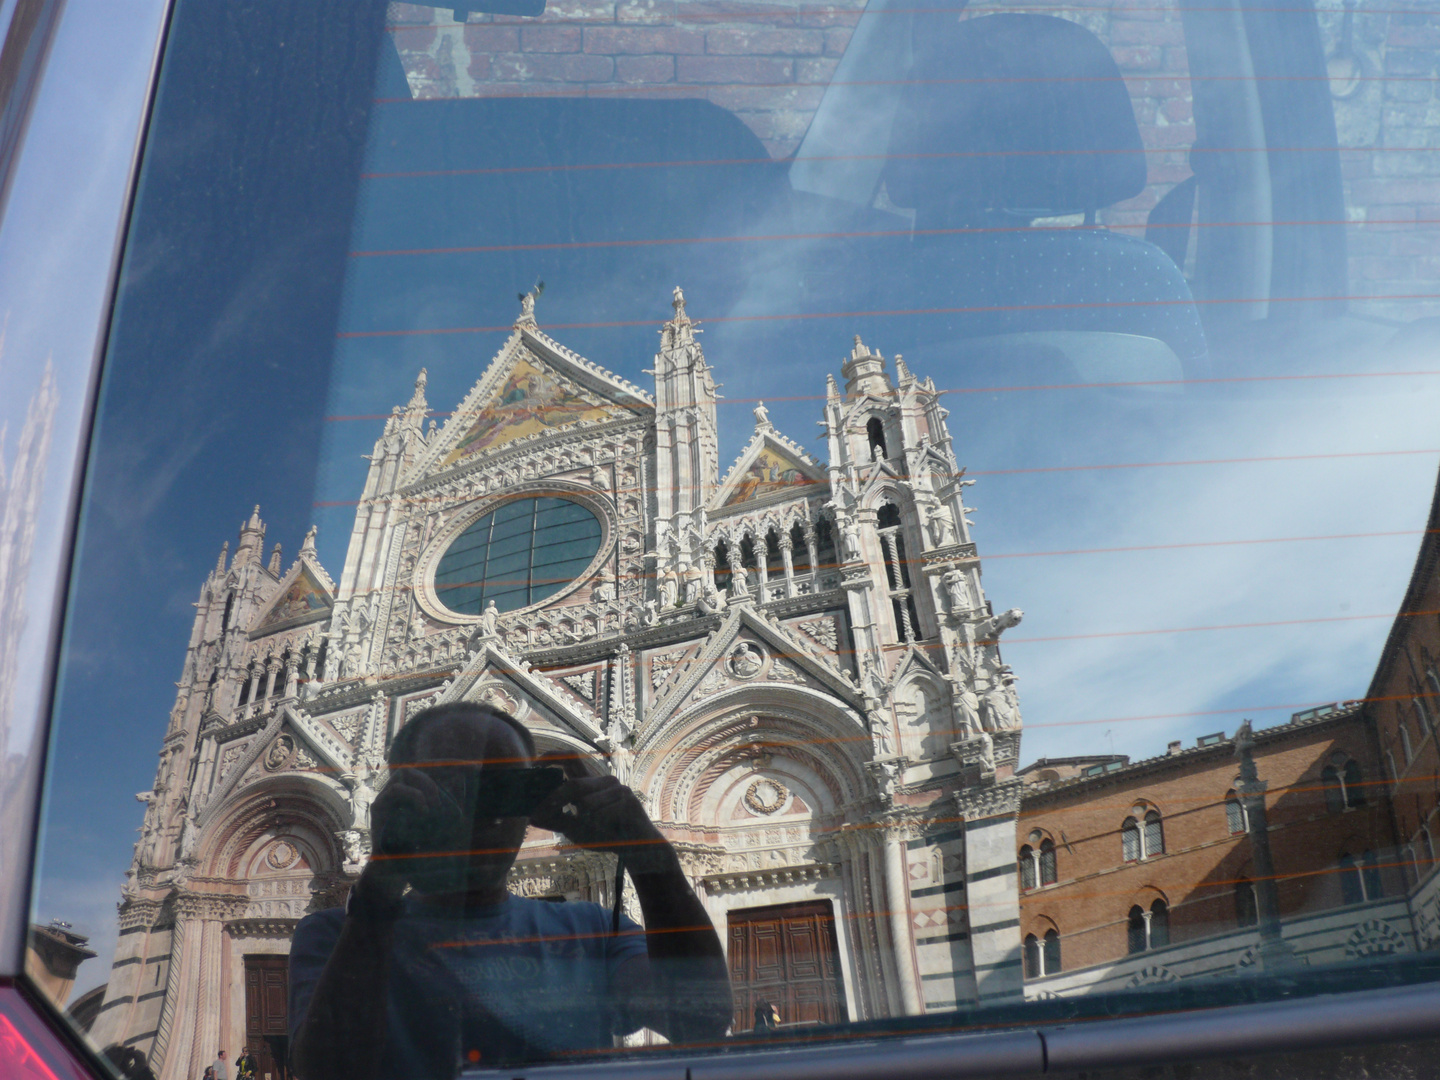 Dom zu Siena, Toskana in Italien im Autofenster